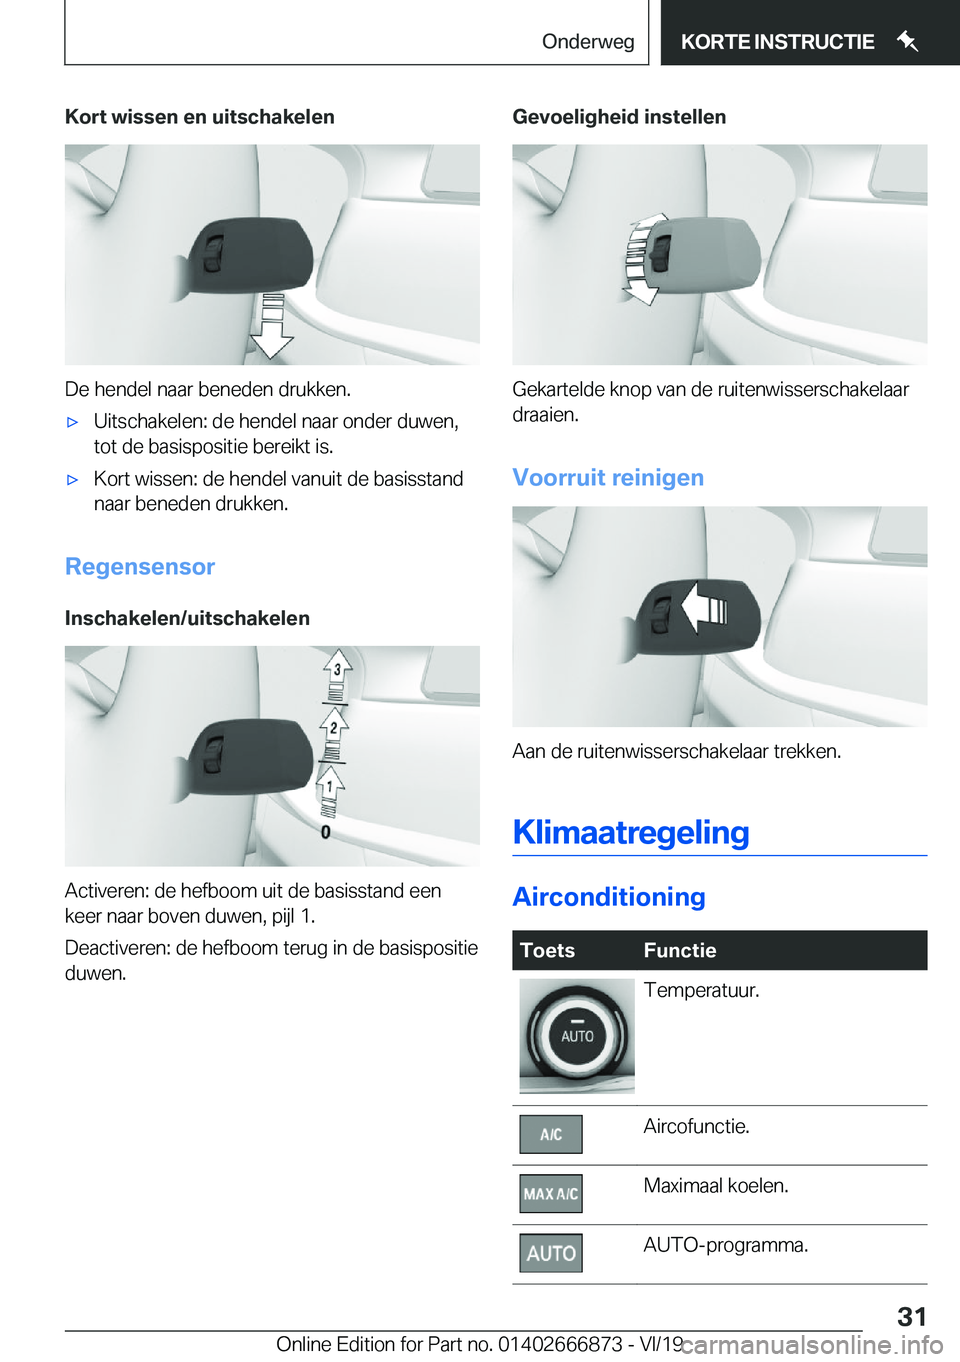 BMW X4 M 2020  Instructieboekjes (in Dutch) �K�o�r�t��w�i�s�s�e�n��e�n��u�i�t�s�c�h�a�k�e�l�e�n
�D�e��h�e�n�d�e�l��n�a�a�r��b�e�n�e�d�e�n��d�r�u�k�k�e�n�.
'x�U�i�t�s�c�h�a�k�e�l�e�n�:��d�e��h�e�n�d�e�l��n�a�a�r��o�n�d�e�r��d�u�w